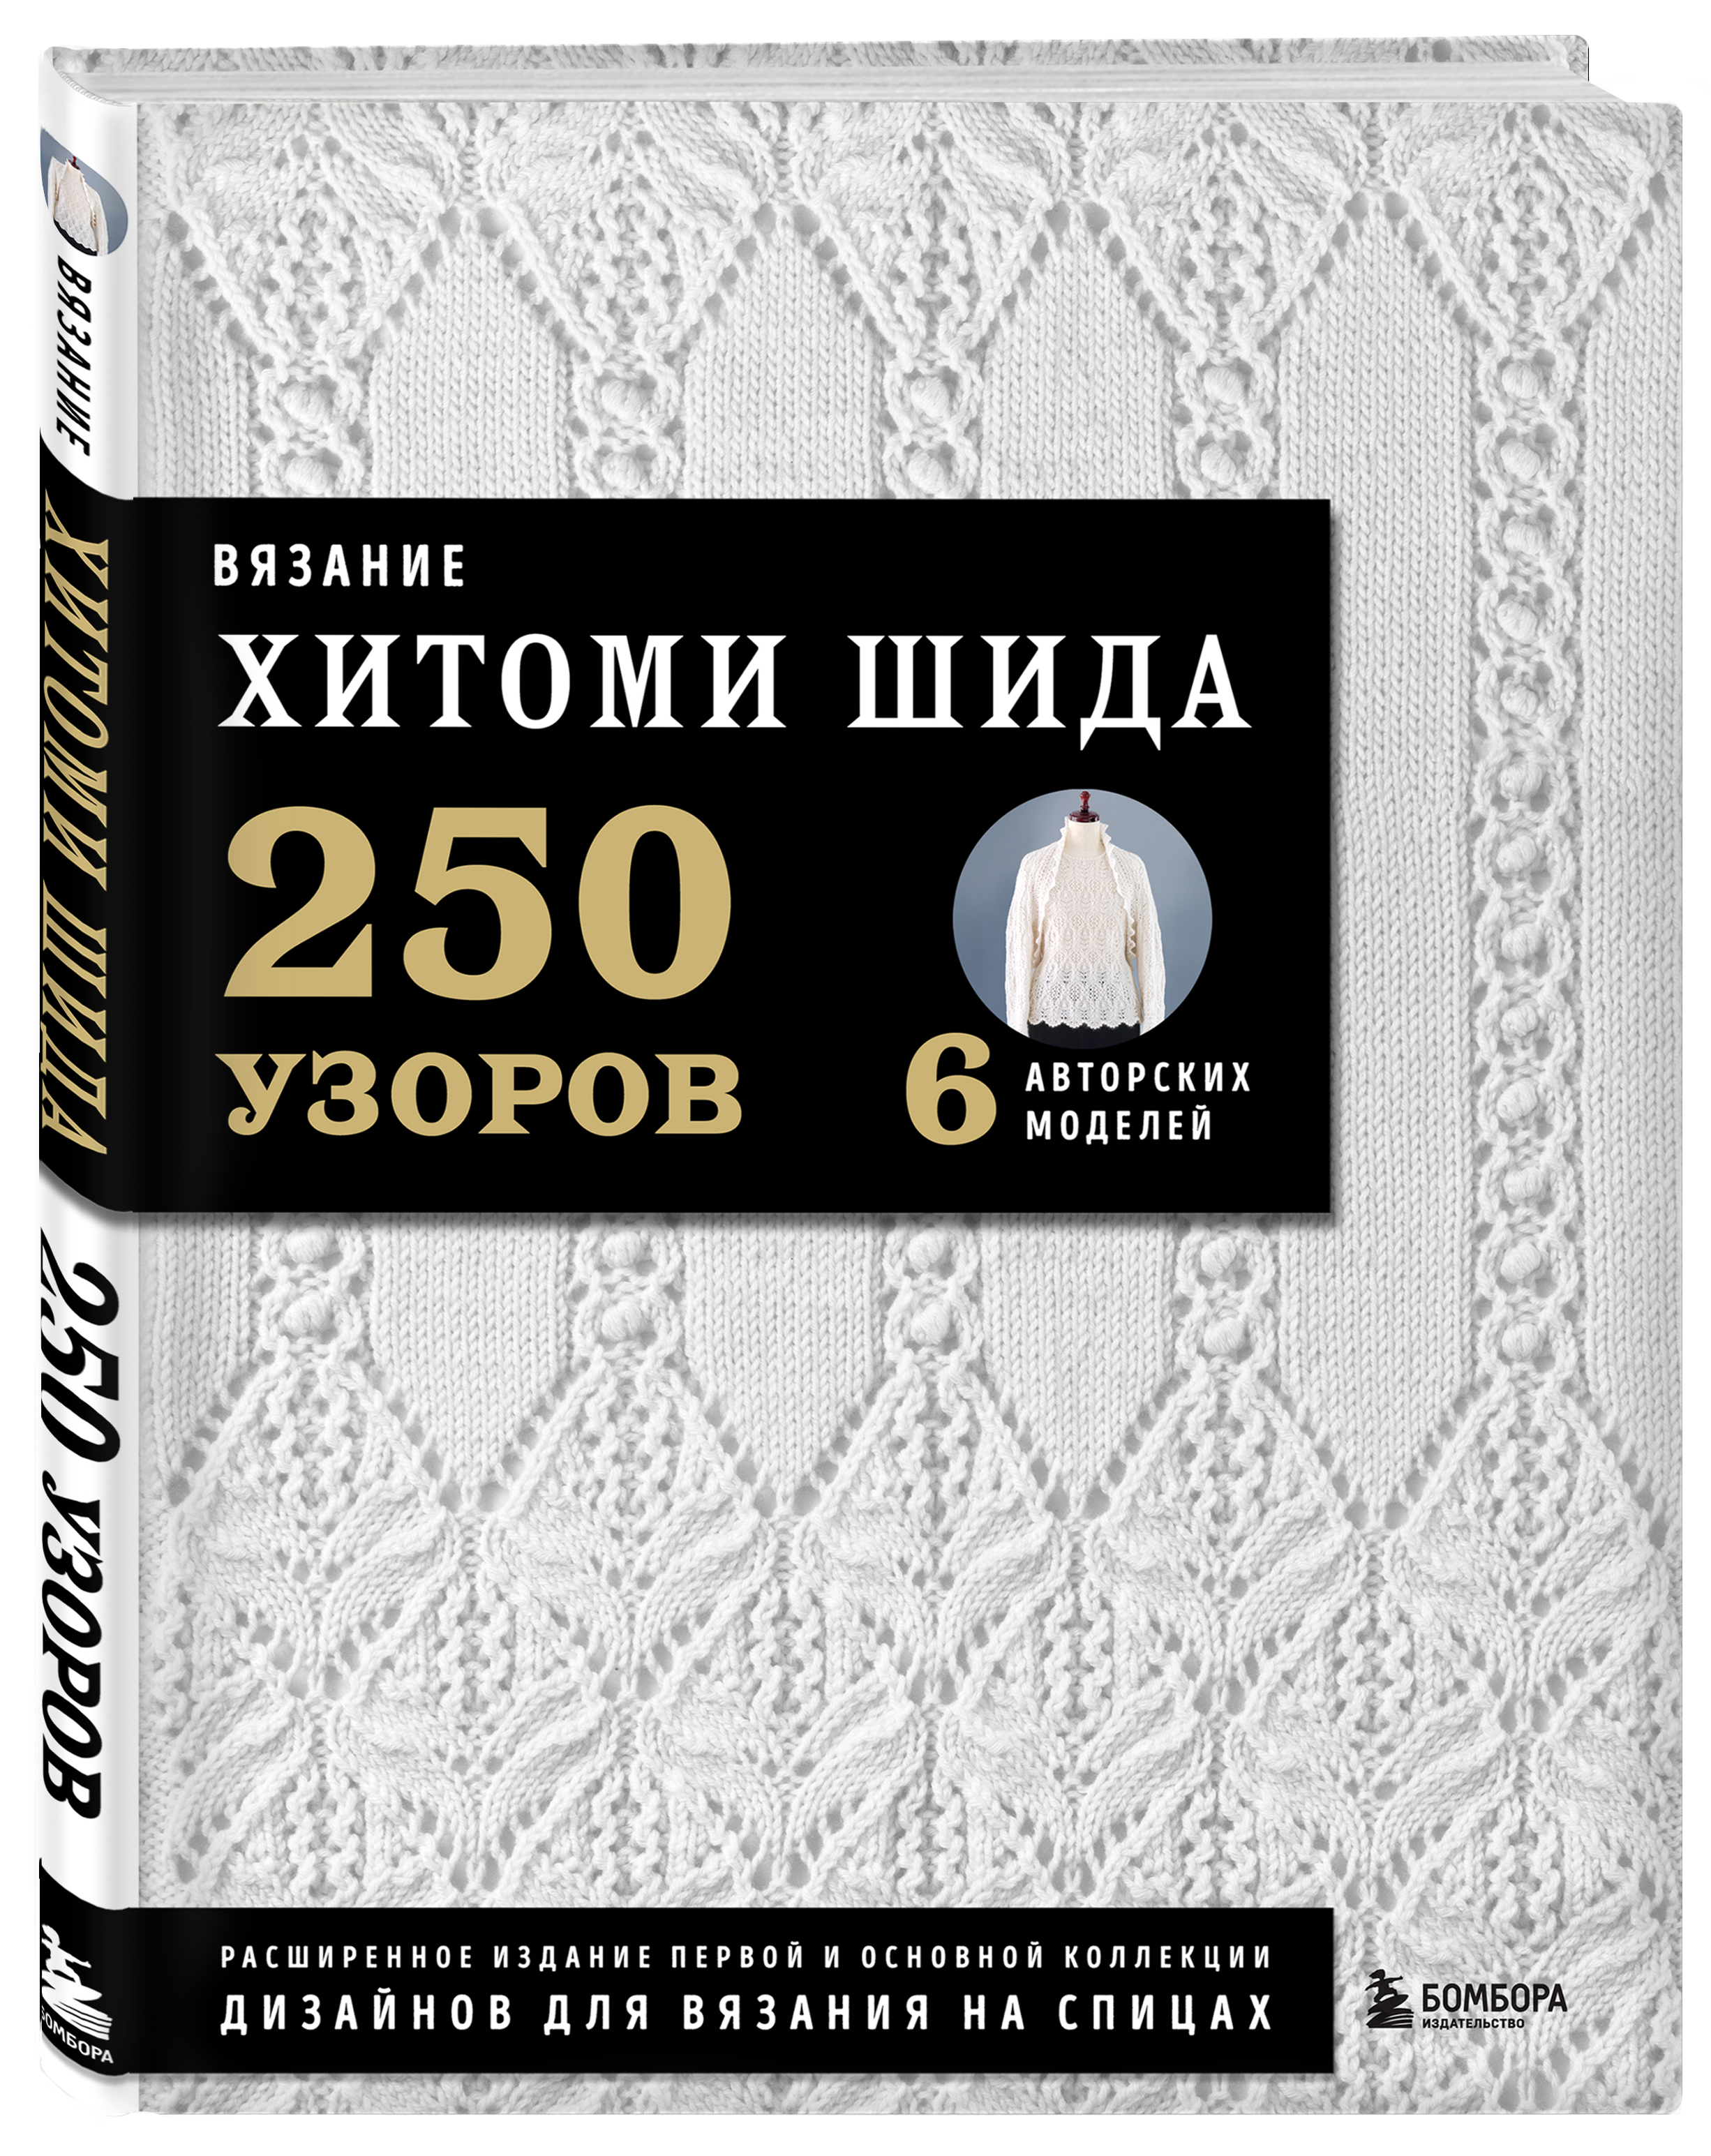 Вязание Хитоми Шида: 250 узоров, 6 авторских моделей. Расширенное издание первой и основной коллекции дизайнов для вязания на спицах